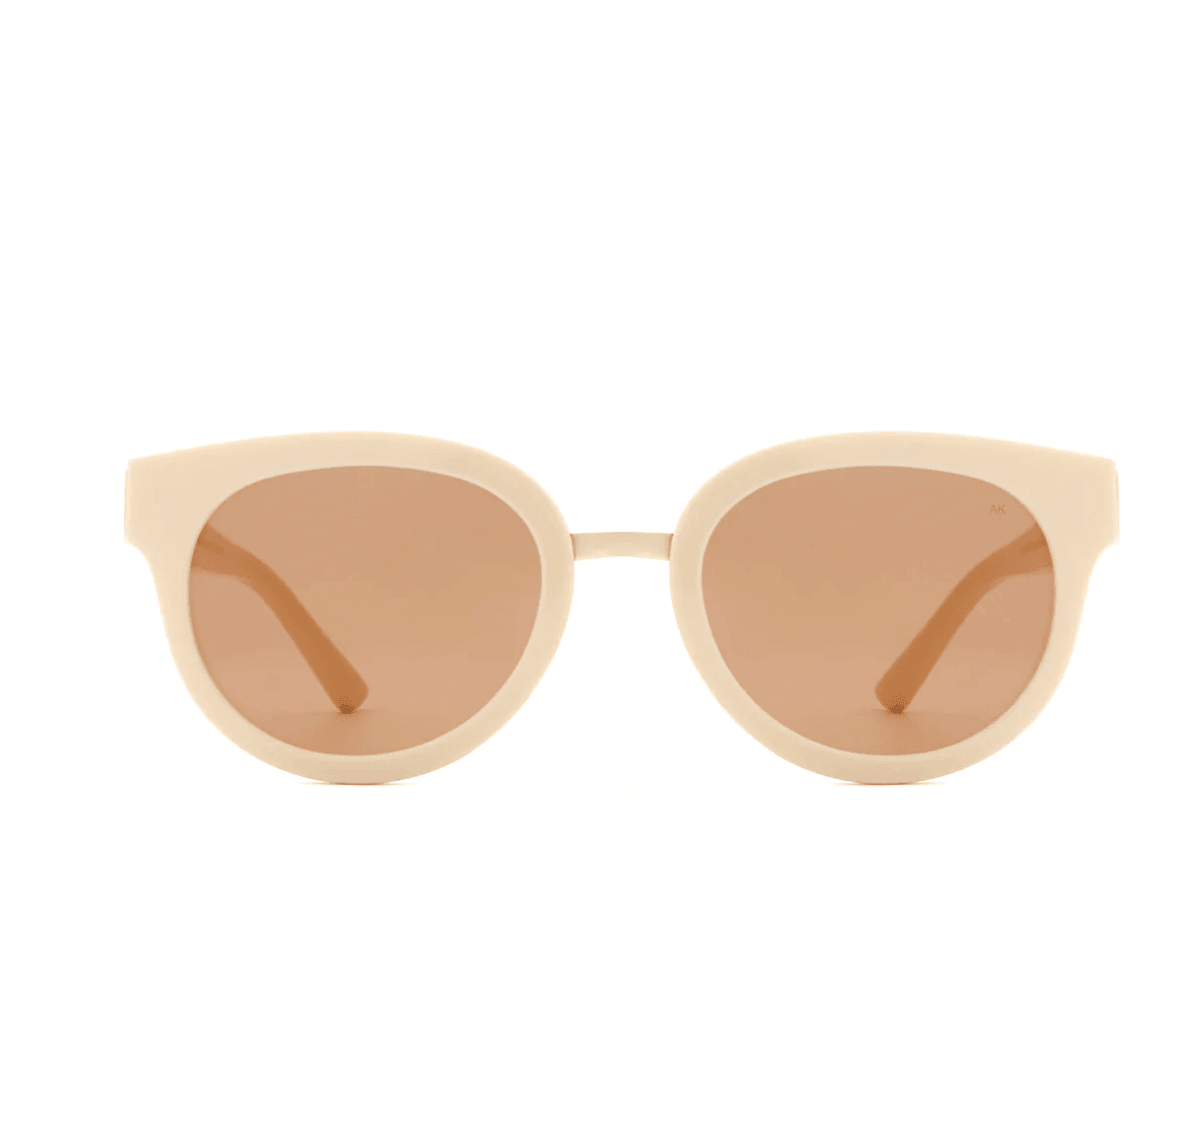 A.Kjaerbede Accessories Jolie Sunglasses Cream